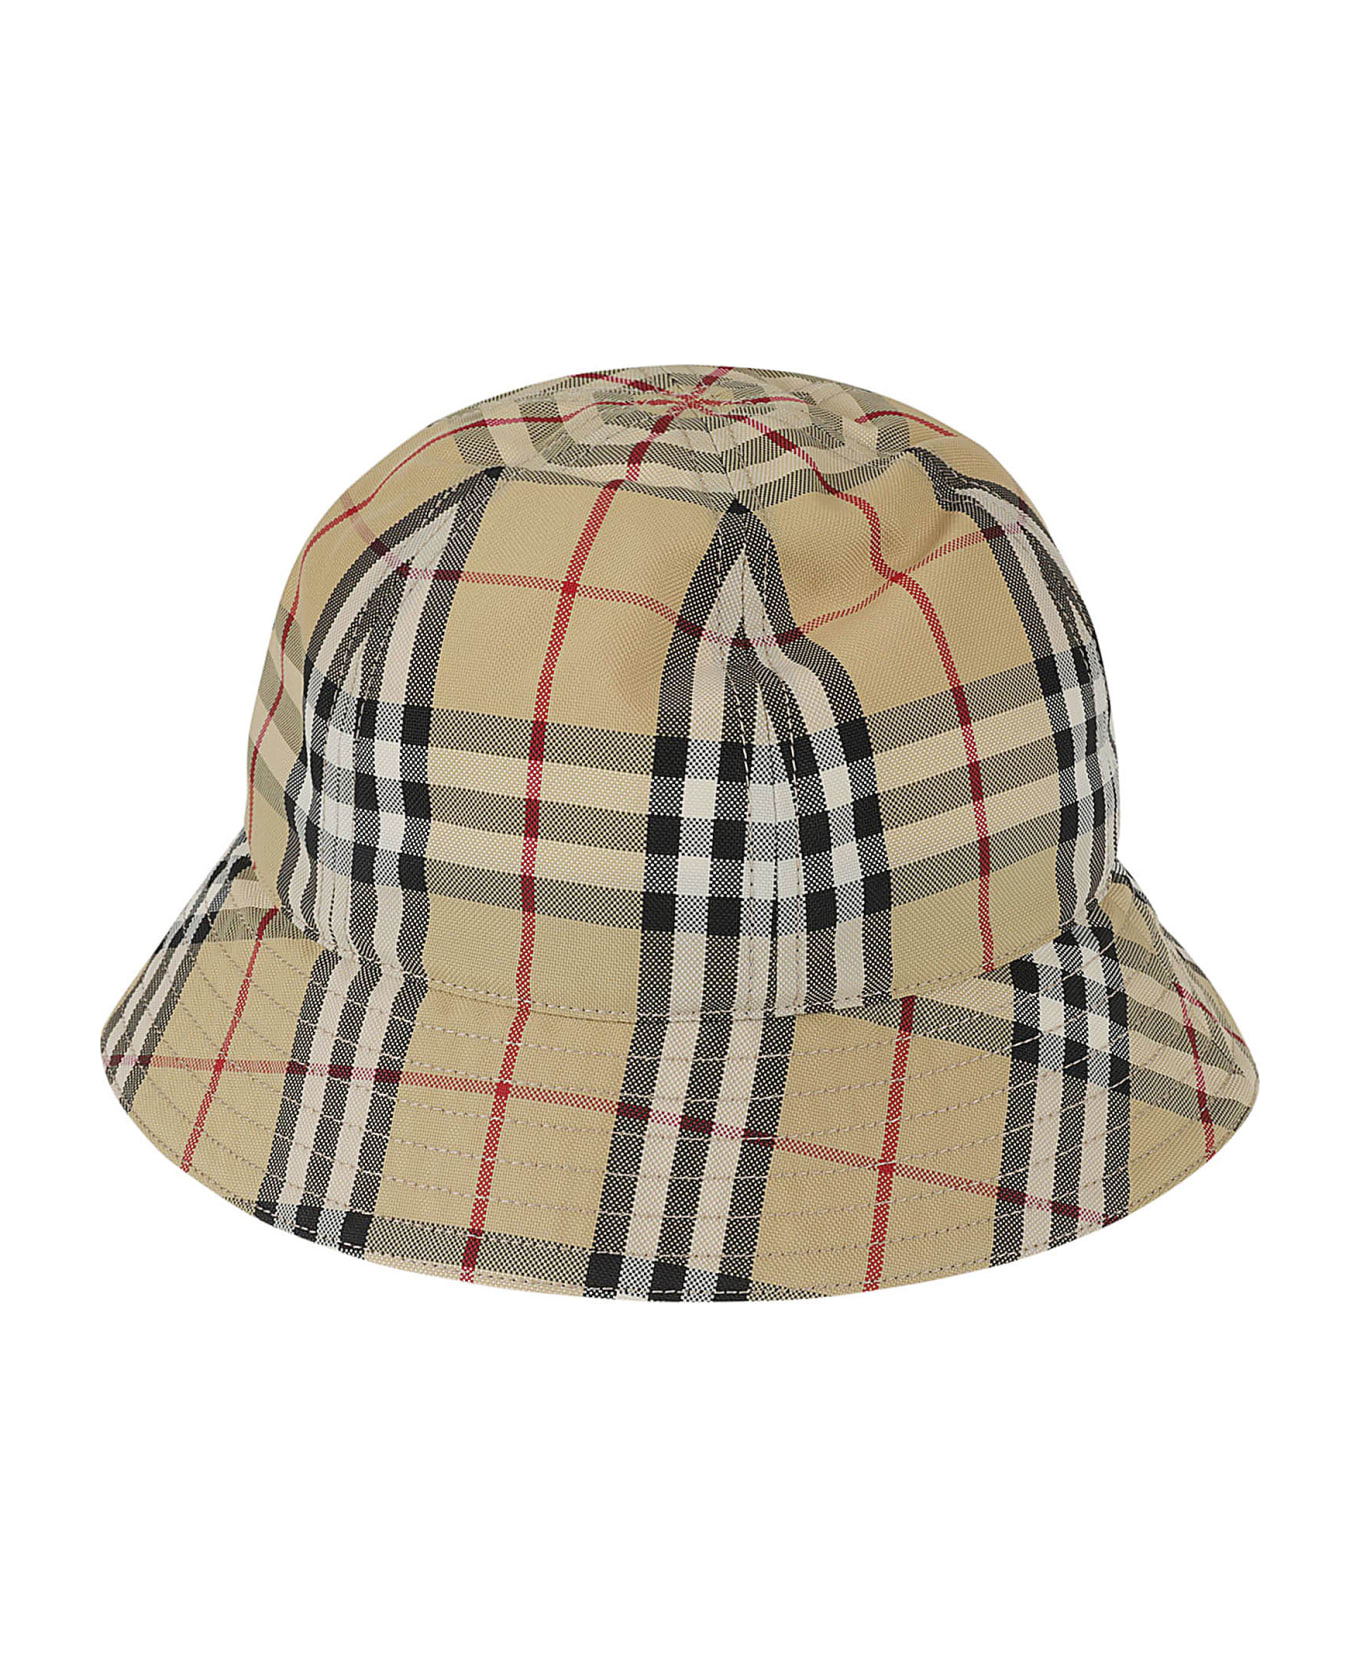 Burberry Bucket Hat In Vintage Check - Beige